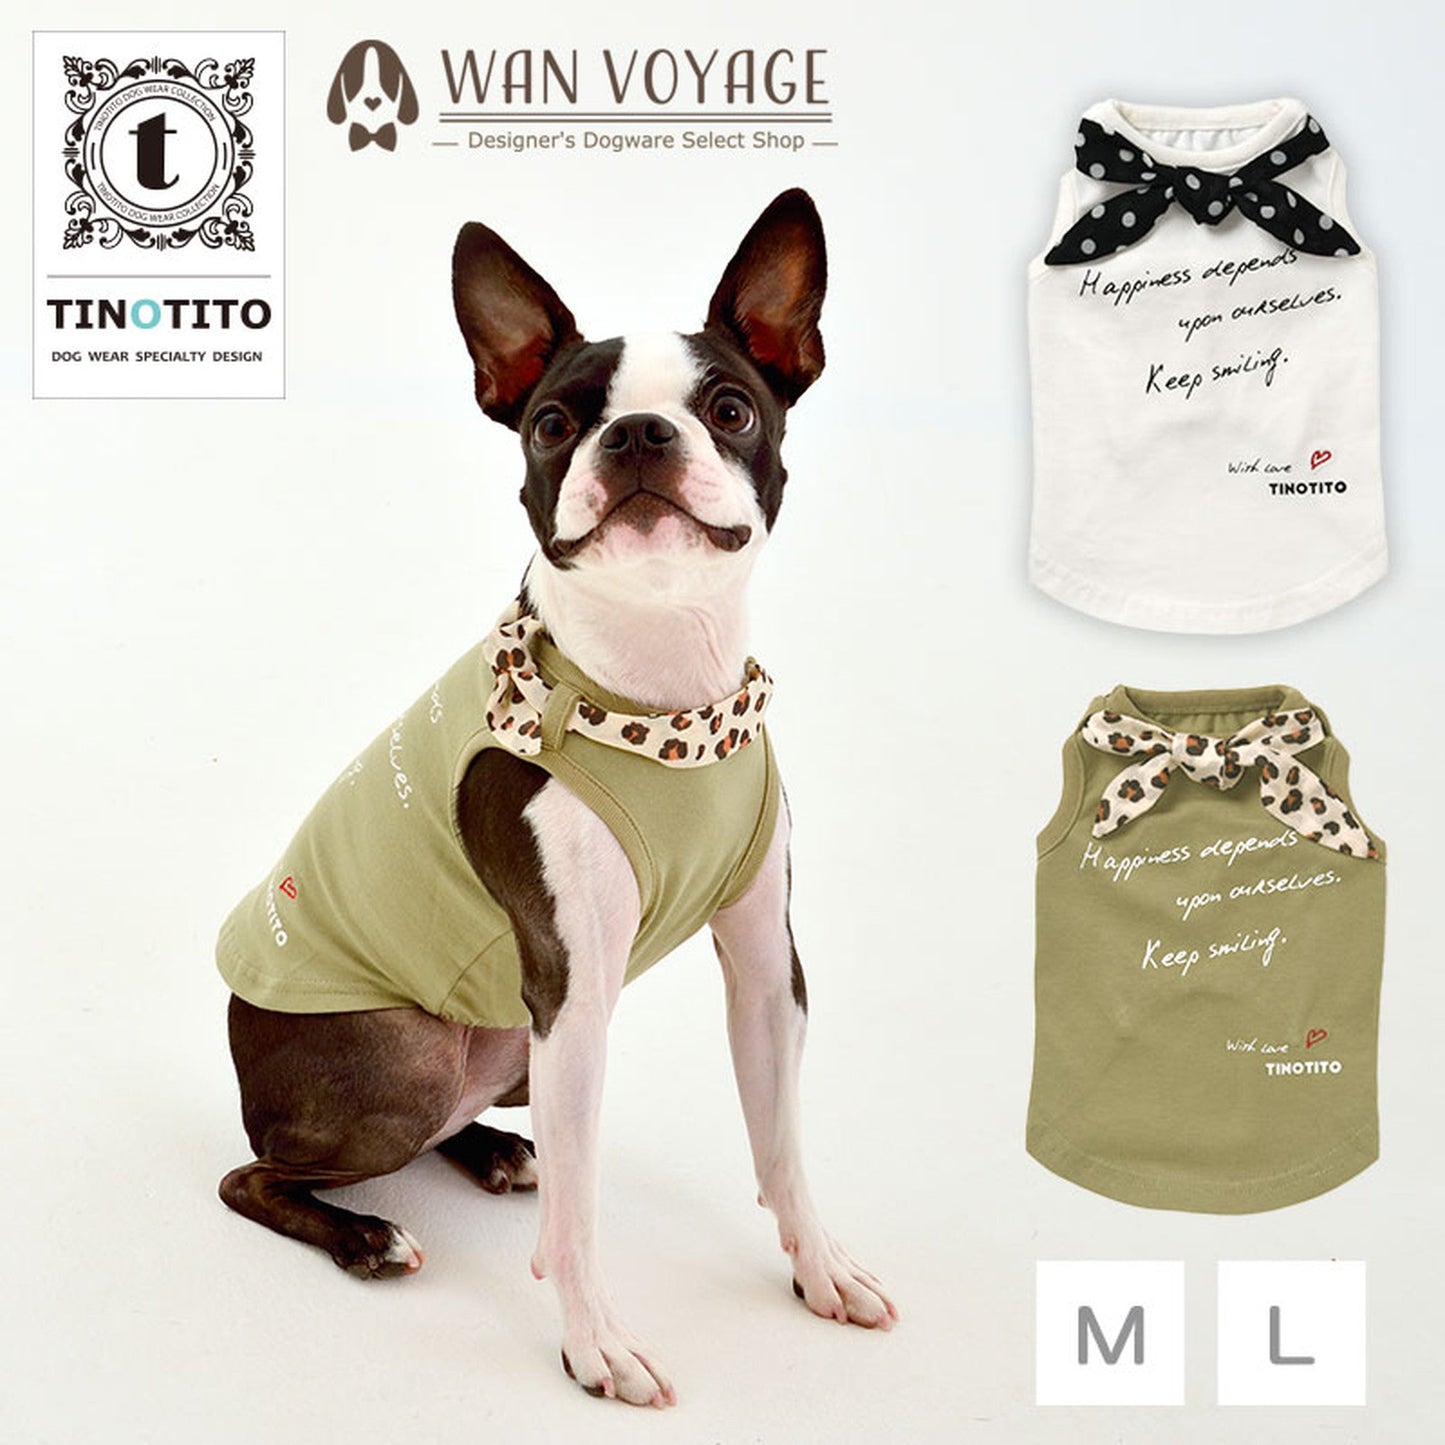 スカーフ付きタンクトップ 犬服 ドッグウェア M/L ワンボヤージュ TINOTITO ティノティート トイプードル チワワ ダックス tt141168-2